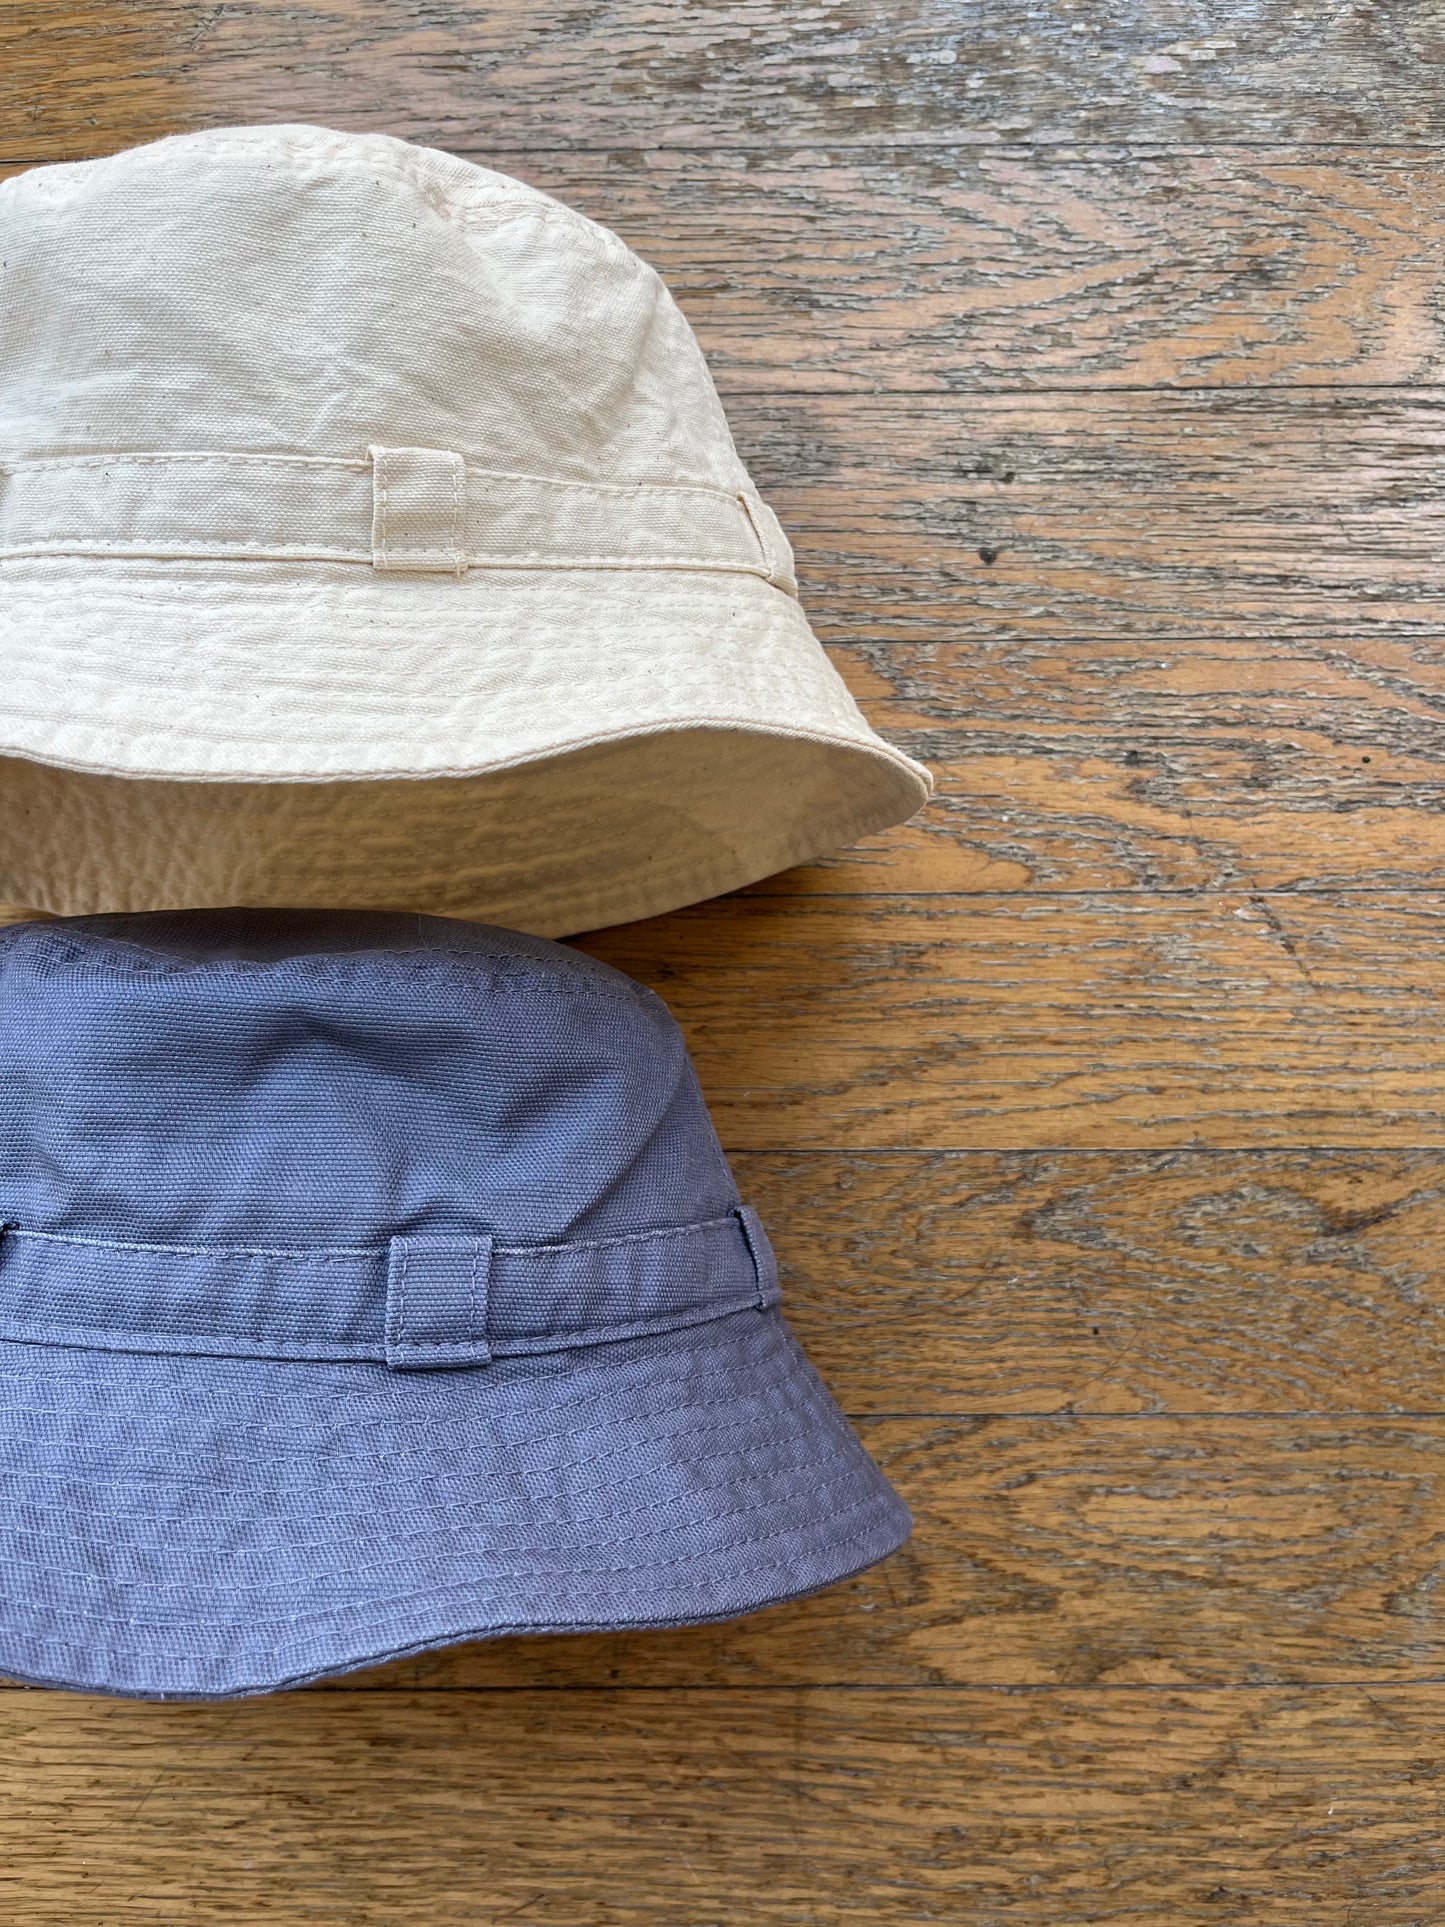 [ BLINK ] Cotton Canvas Boonie Hat